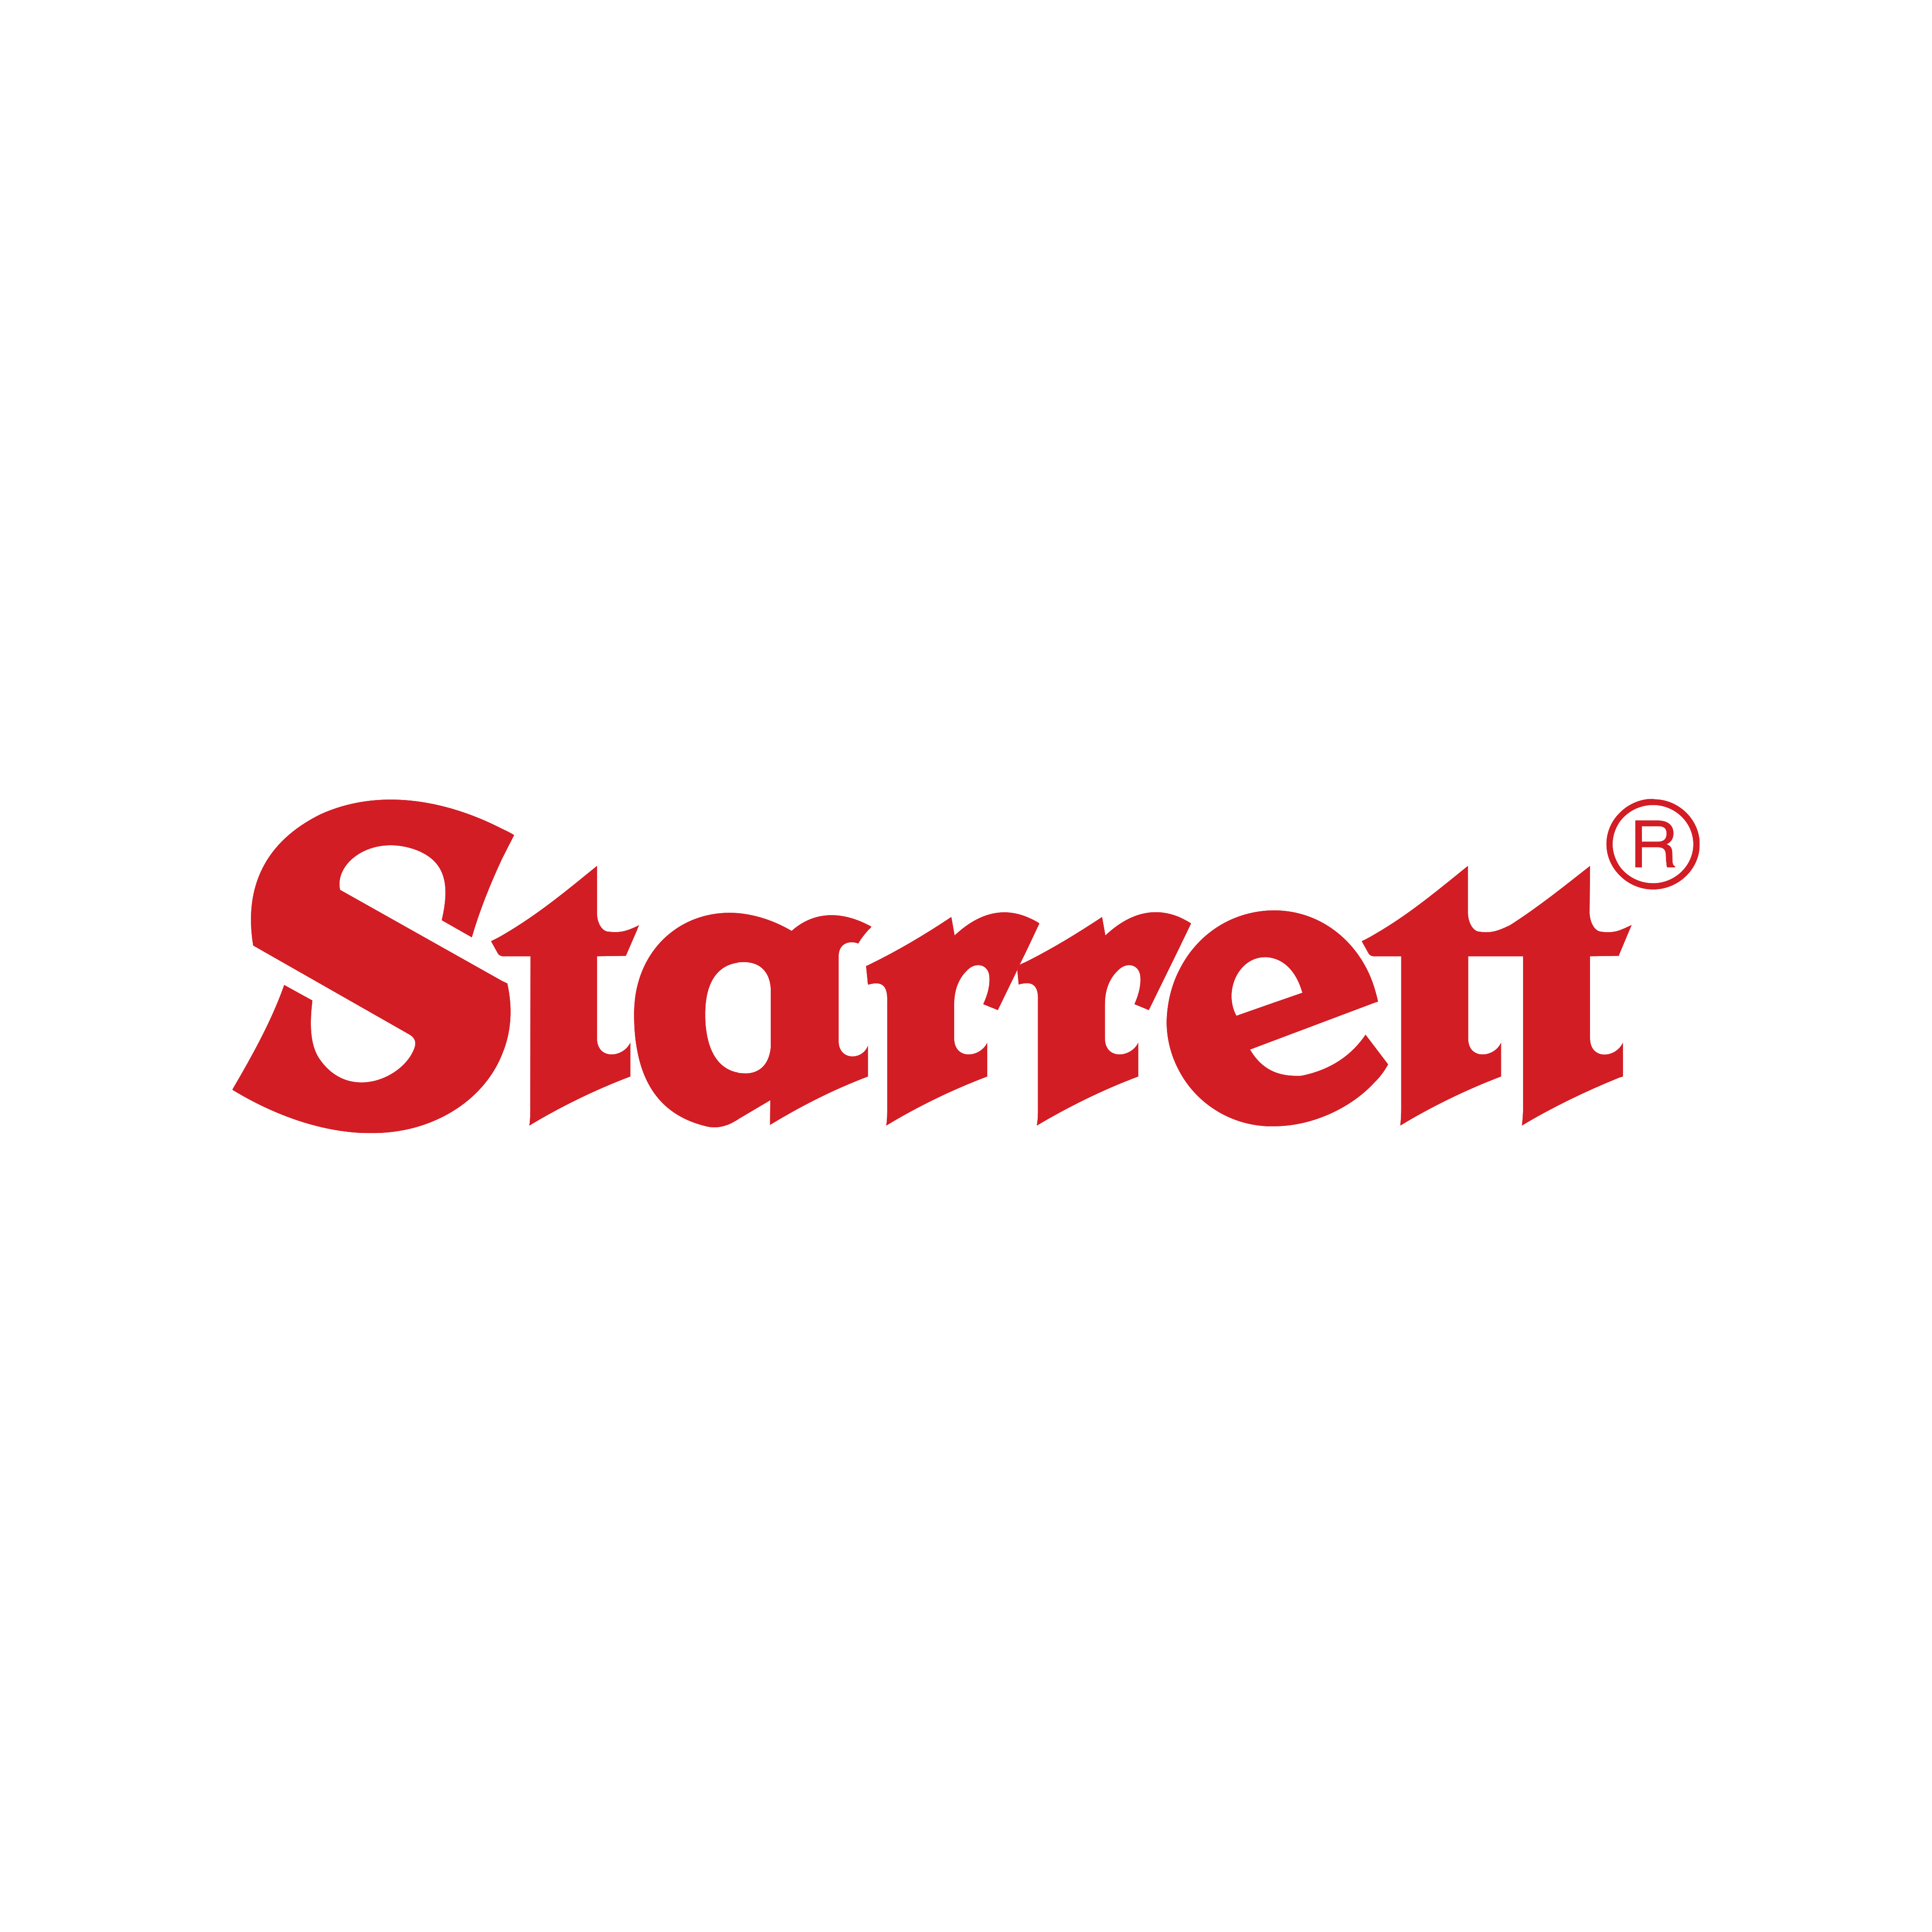 Starrett Logo PNG.